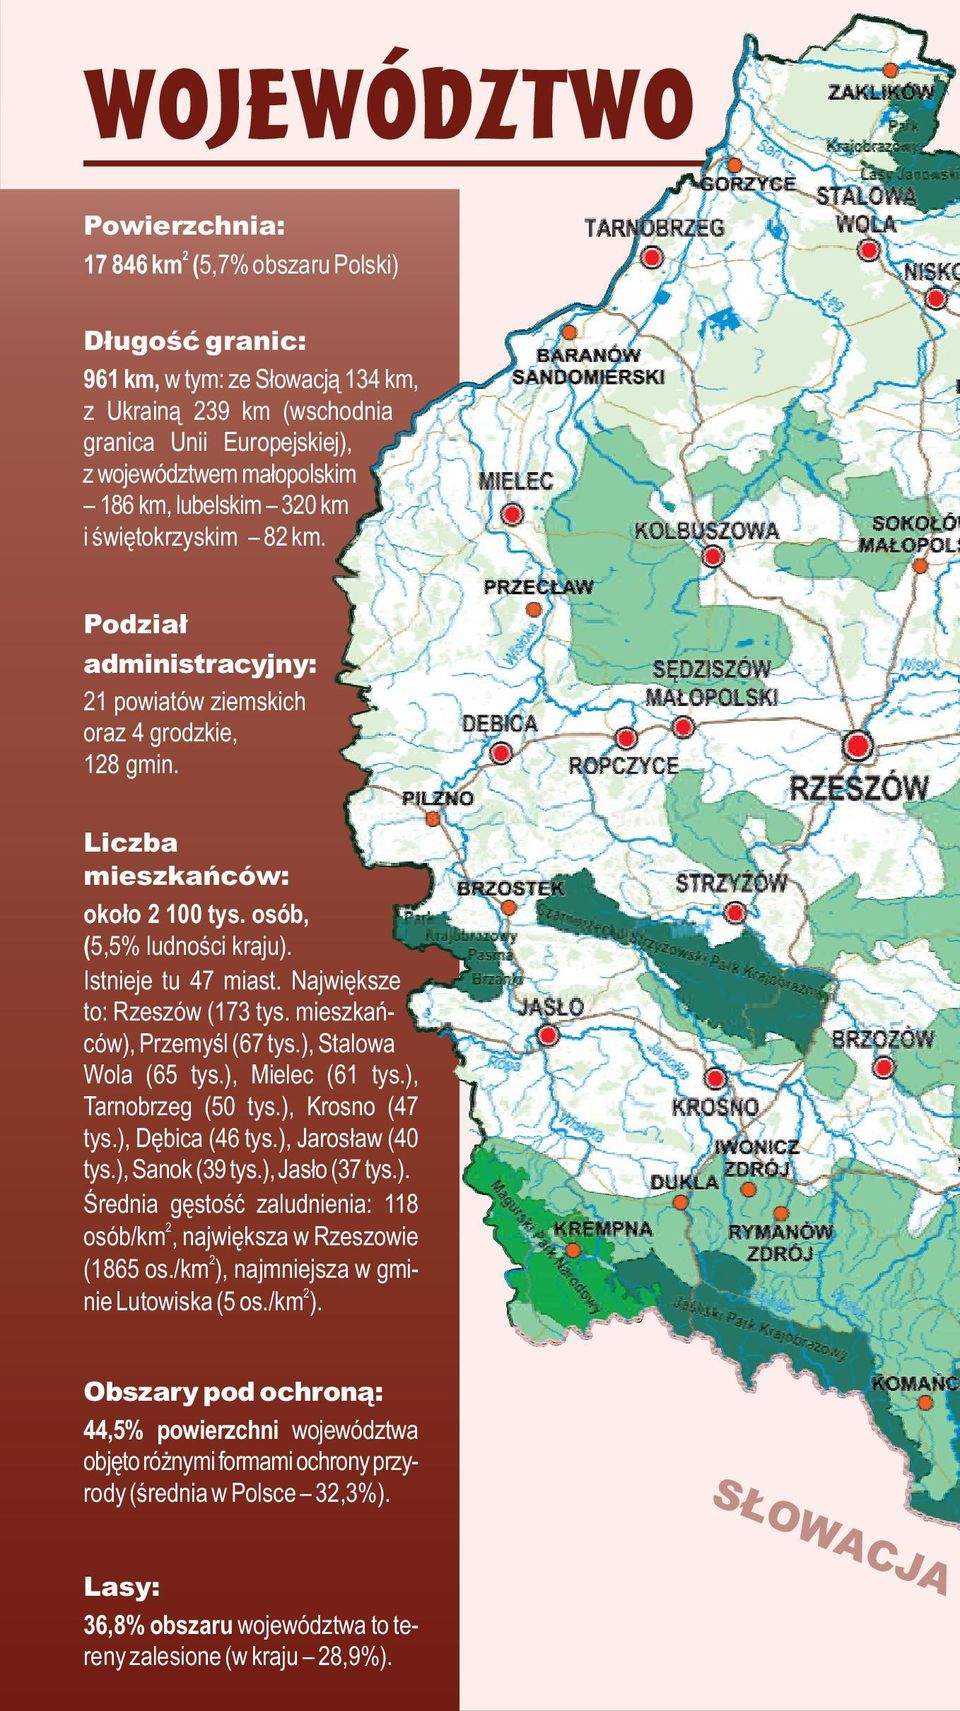 Największe to: Rzeszów (173 tys. mieszkańców), Przemyśl (67 tys.), Stalowa Wola (65 tys.), Mielec (61 tys.), Tarnobrzeg (50 tys.), Krosno (47 tys.), Dębica (46 tys.), Jarosław (40 tys.